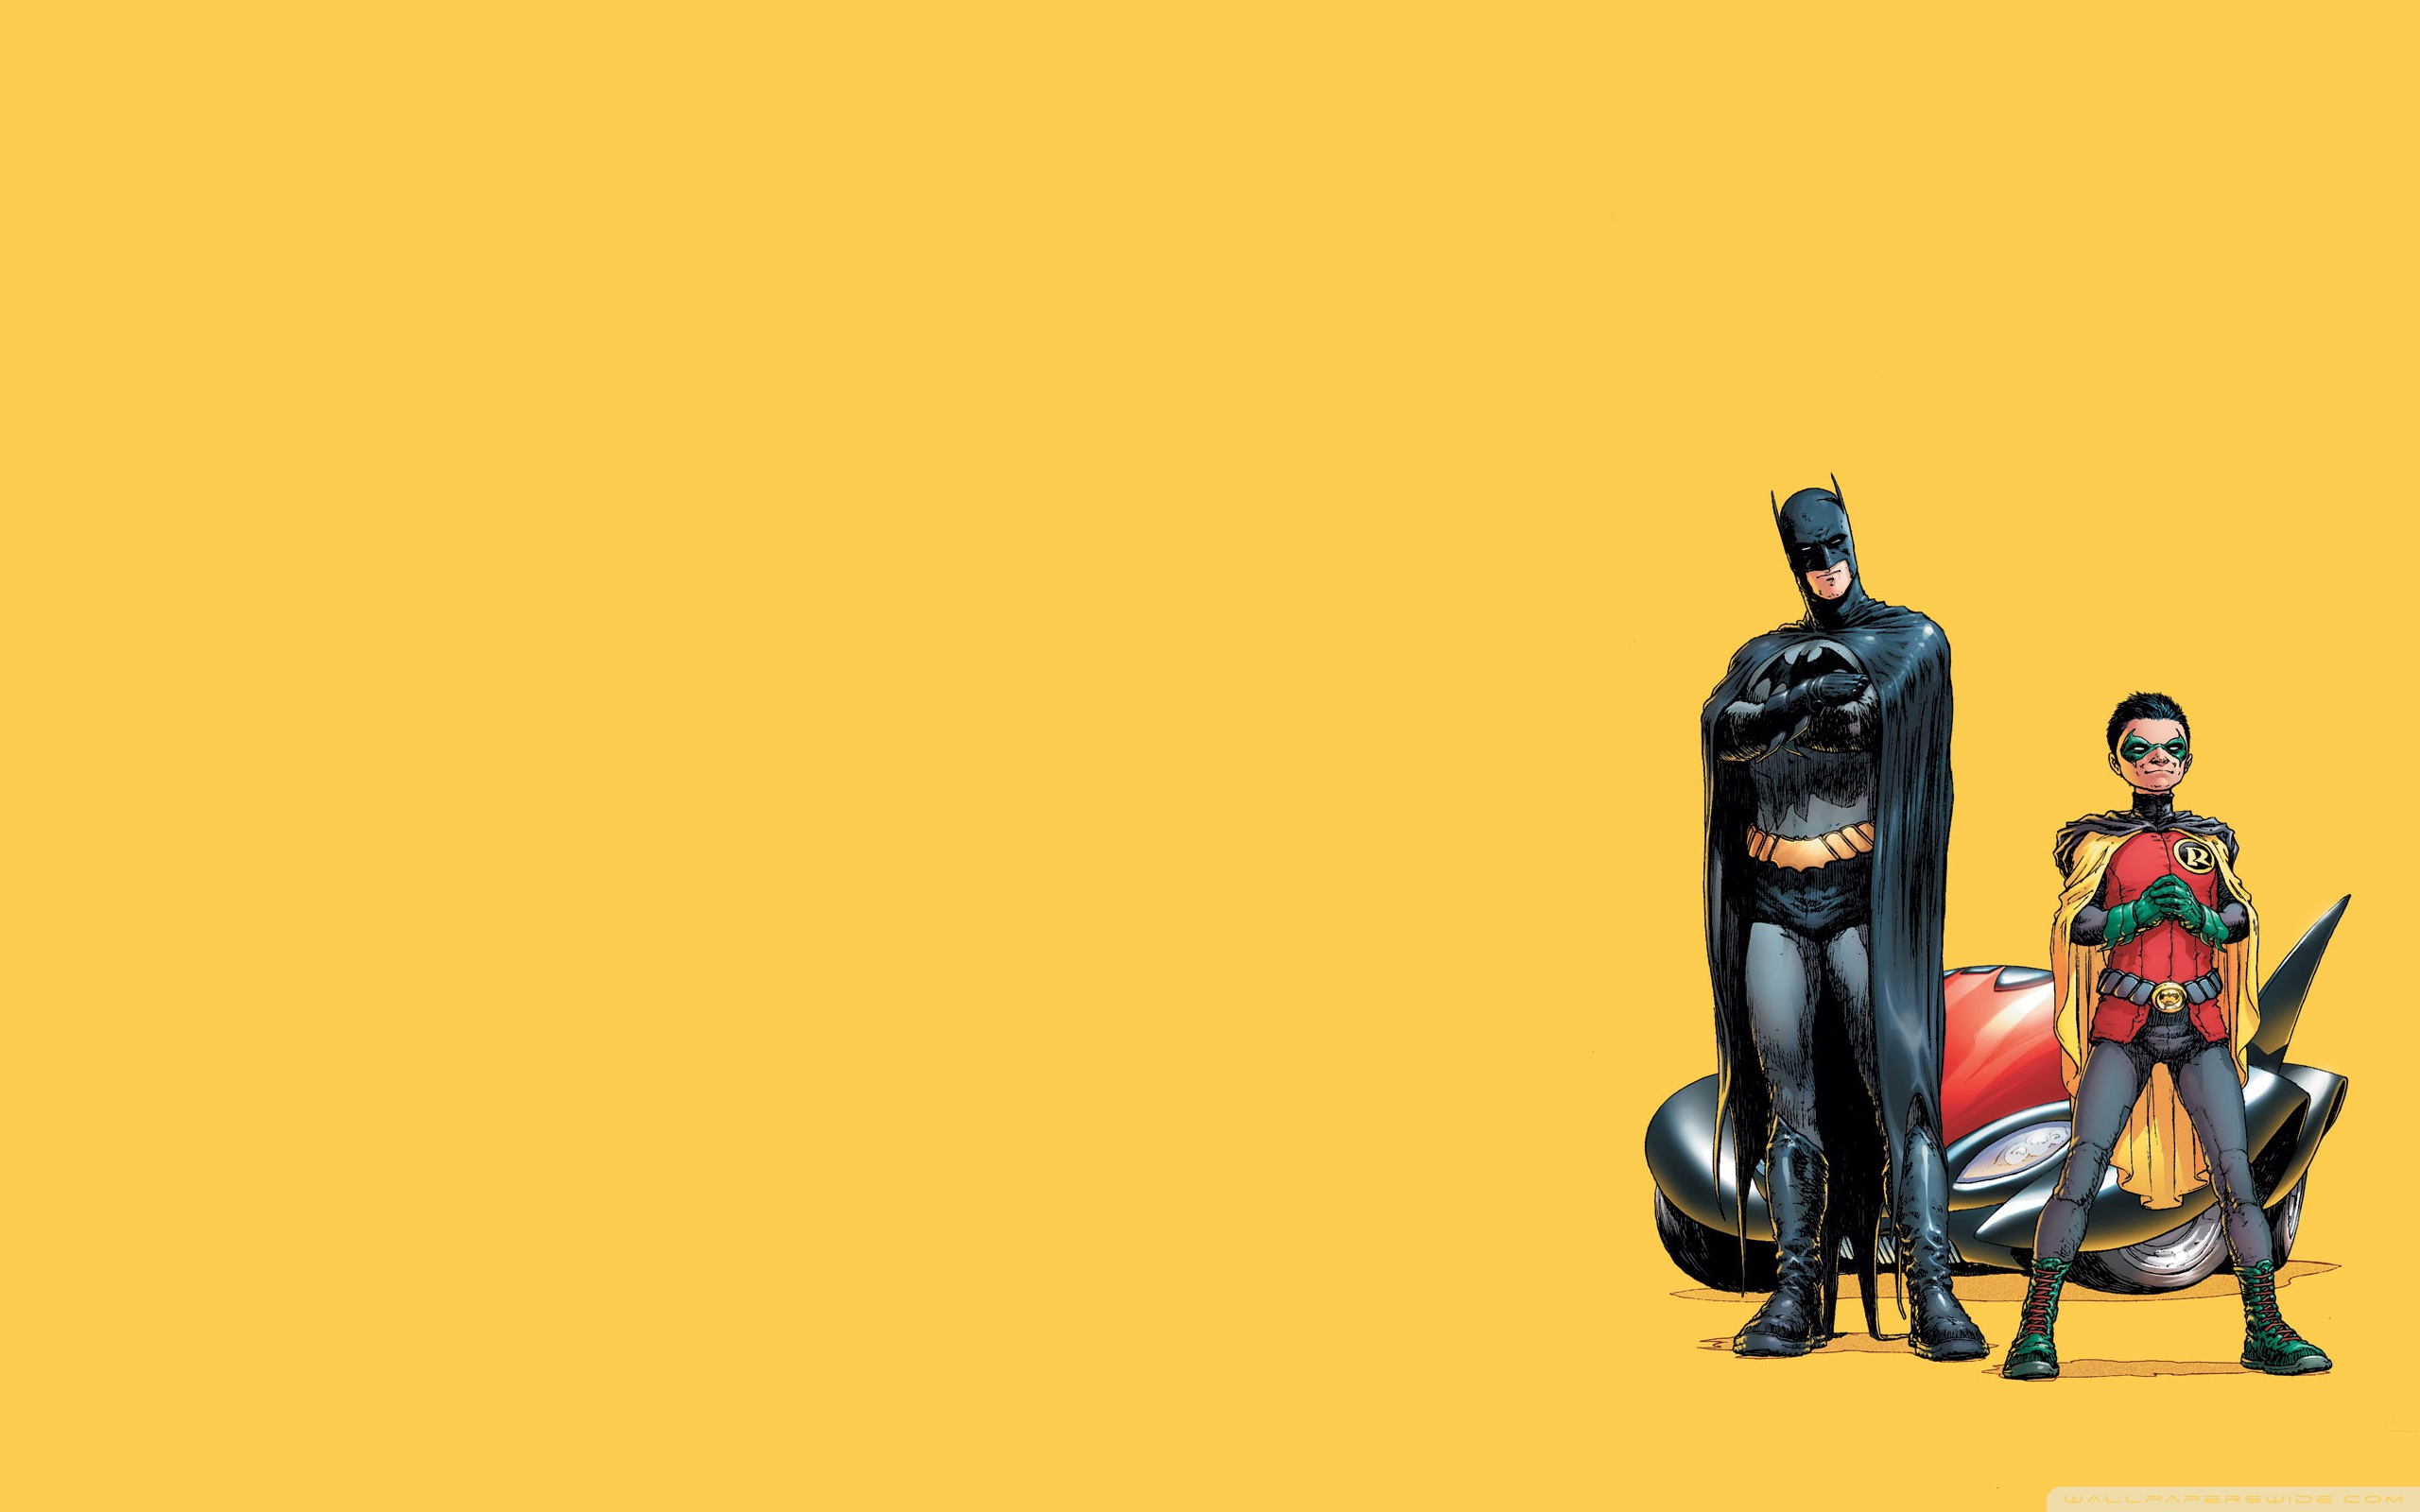 Batman And Robin Cartoon Wallpaper Full HD [2560x1600] - Free ...